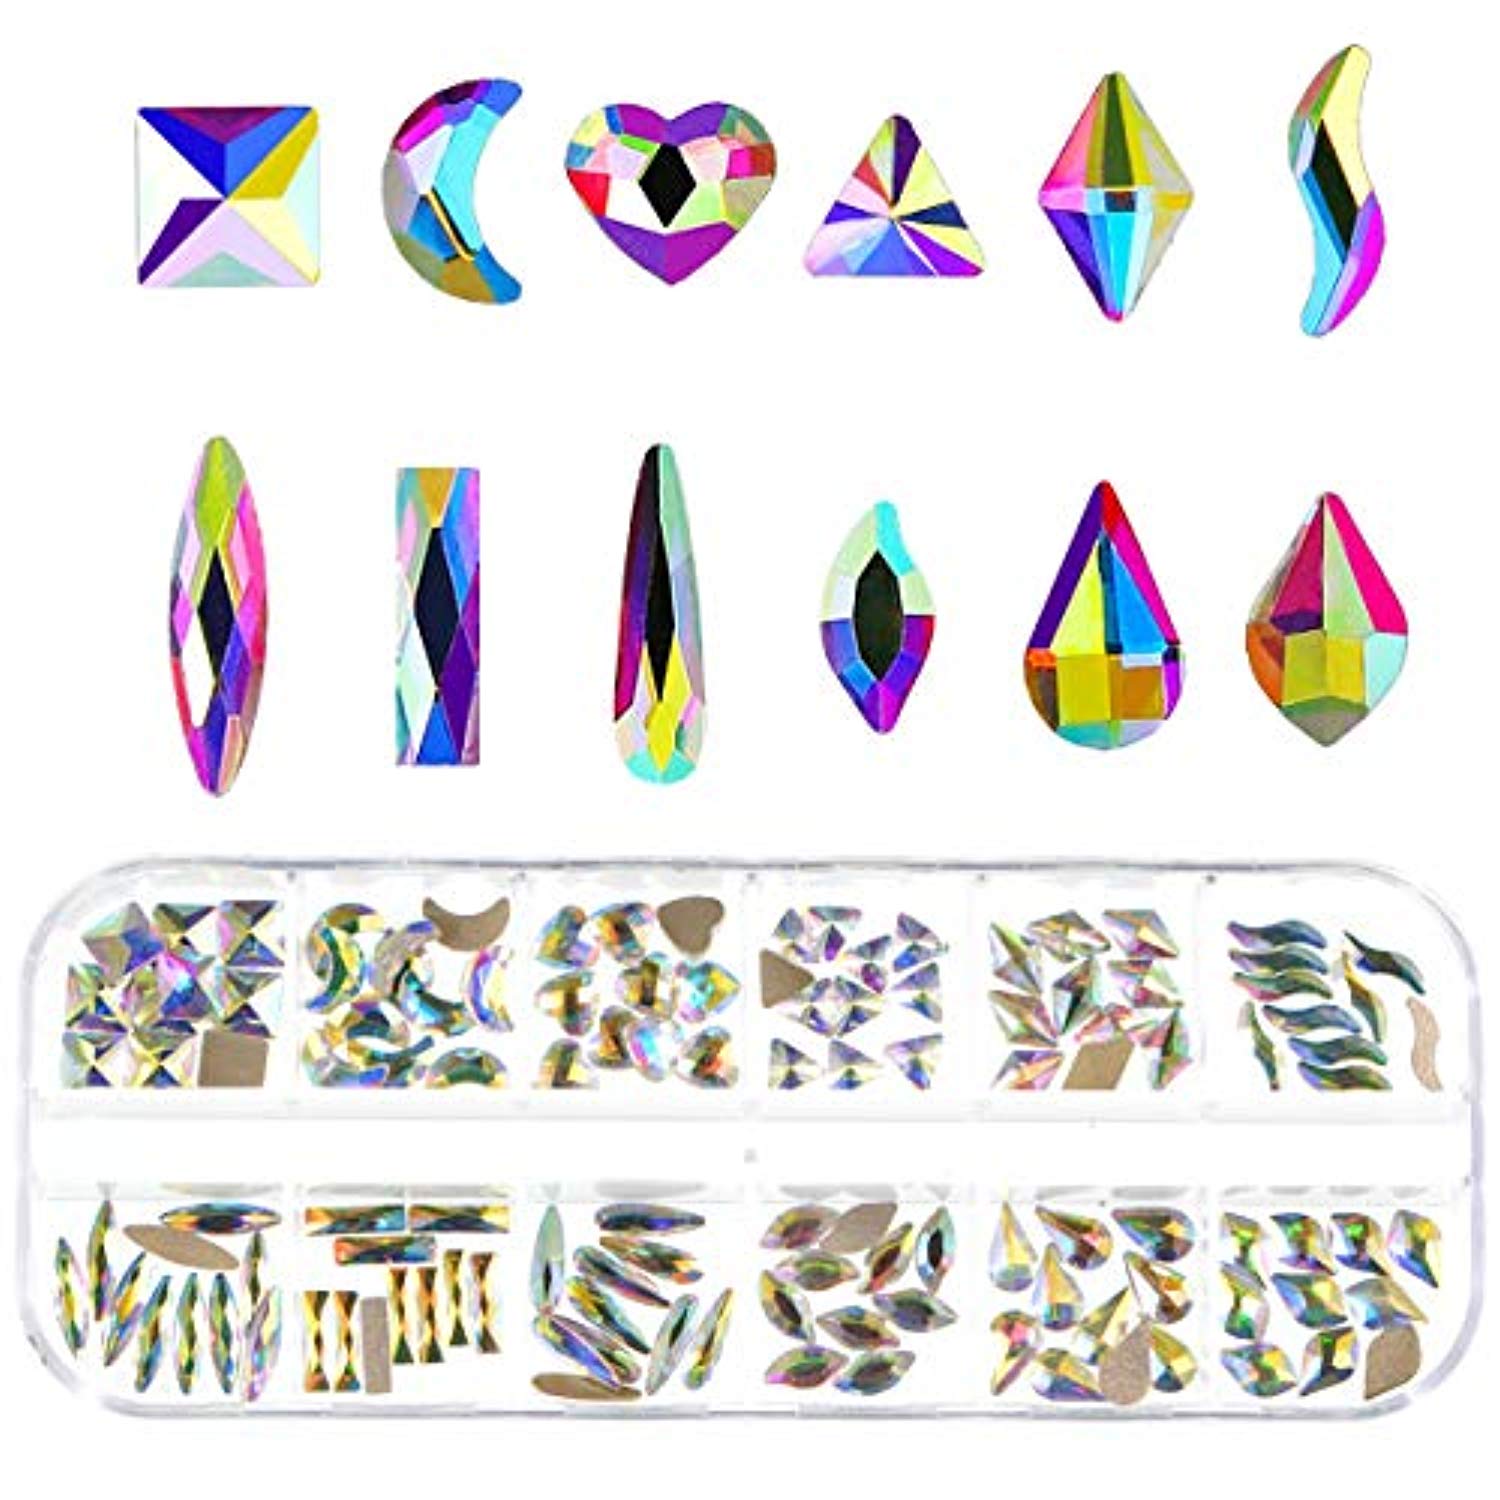 Crystal Rhinestones for 3D Nail Art (120pcs)-Jayden-Crystal AB Mixed 120pcs- Nail Supply American Gel Polish - Phuong Ni